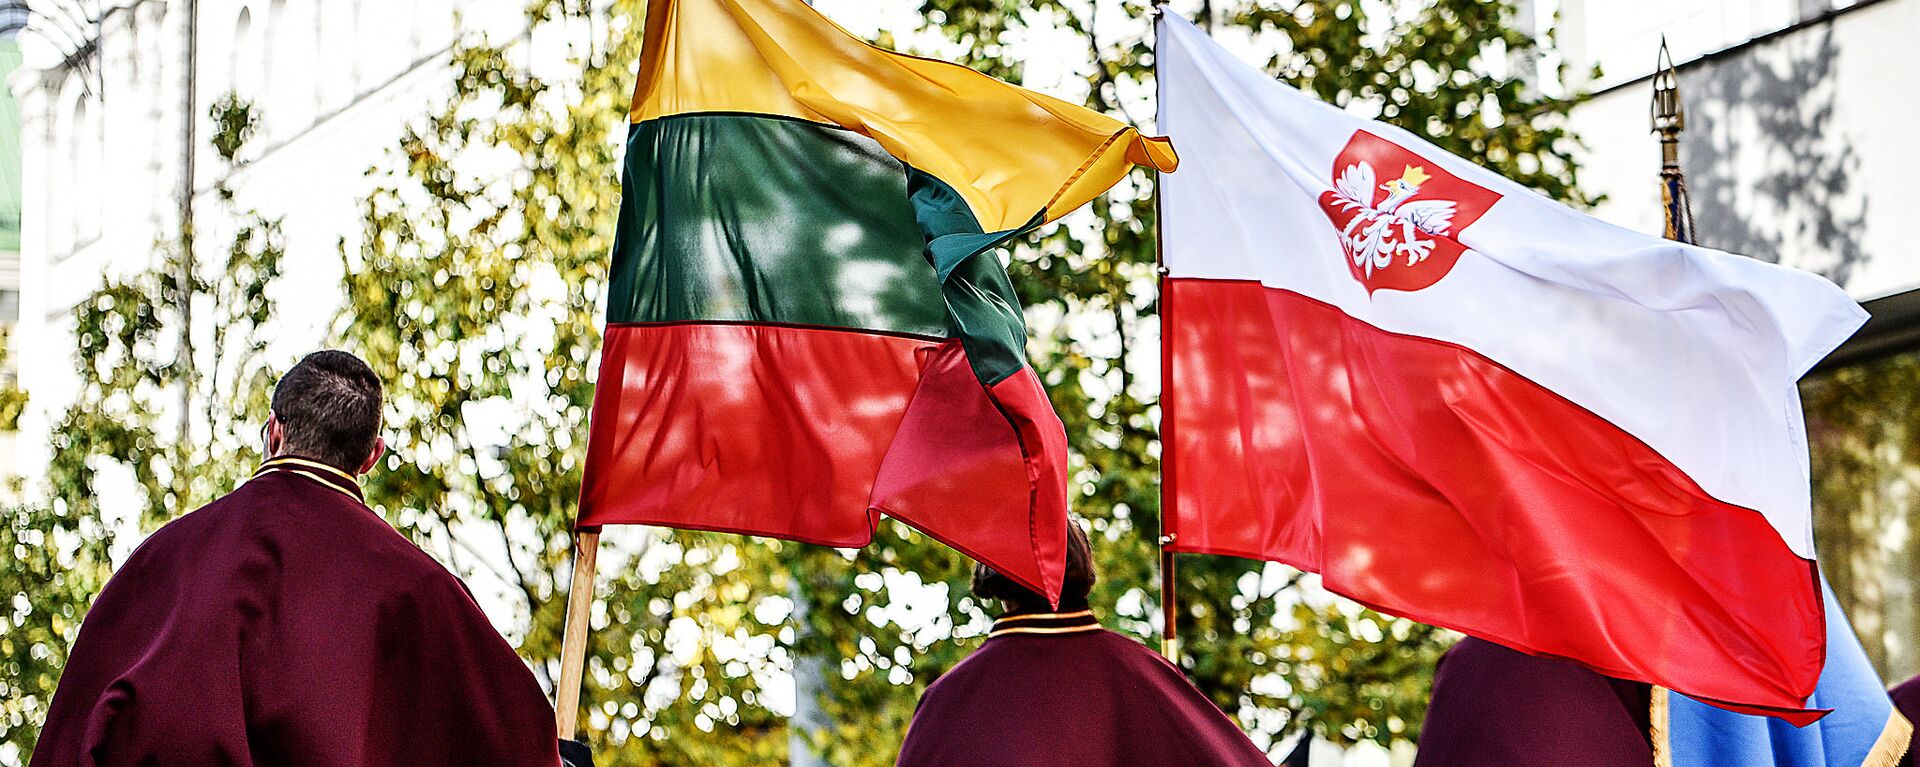 Флаги Литвы и Польши, архивное фото - Sputnik Lietuva, 1920, 01.05.2021